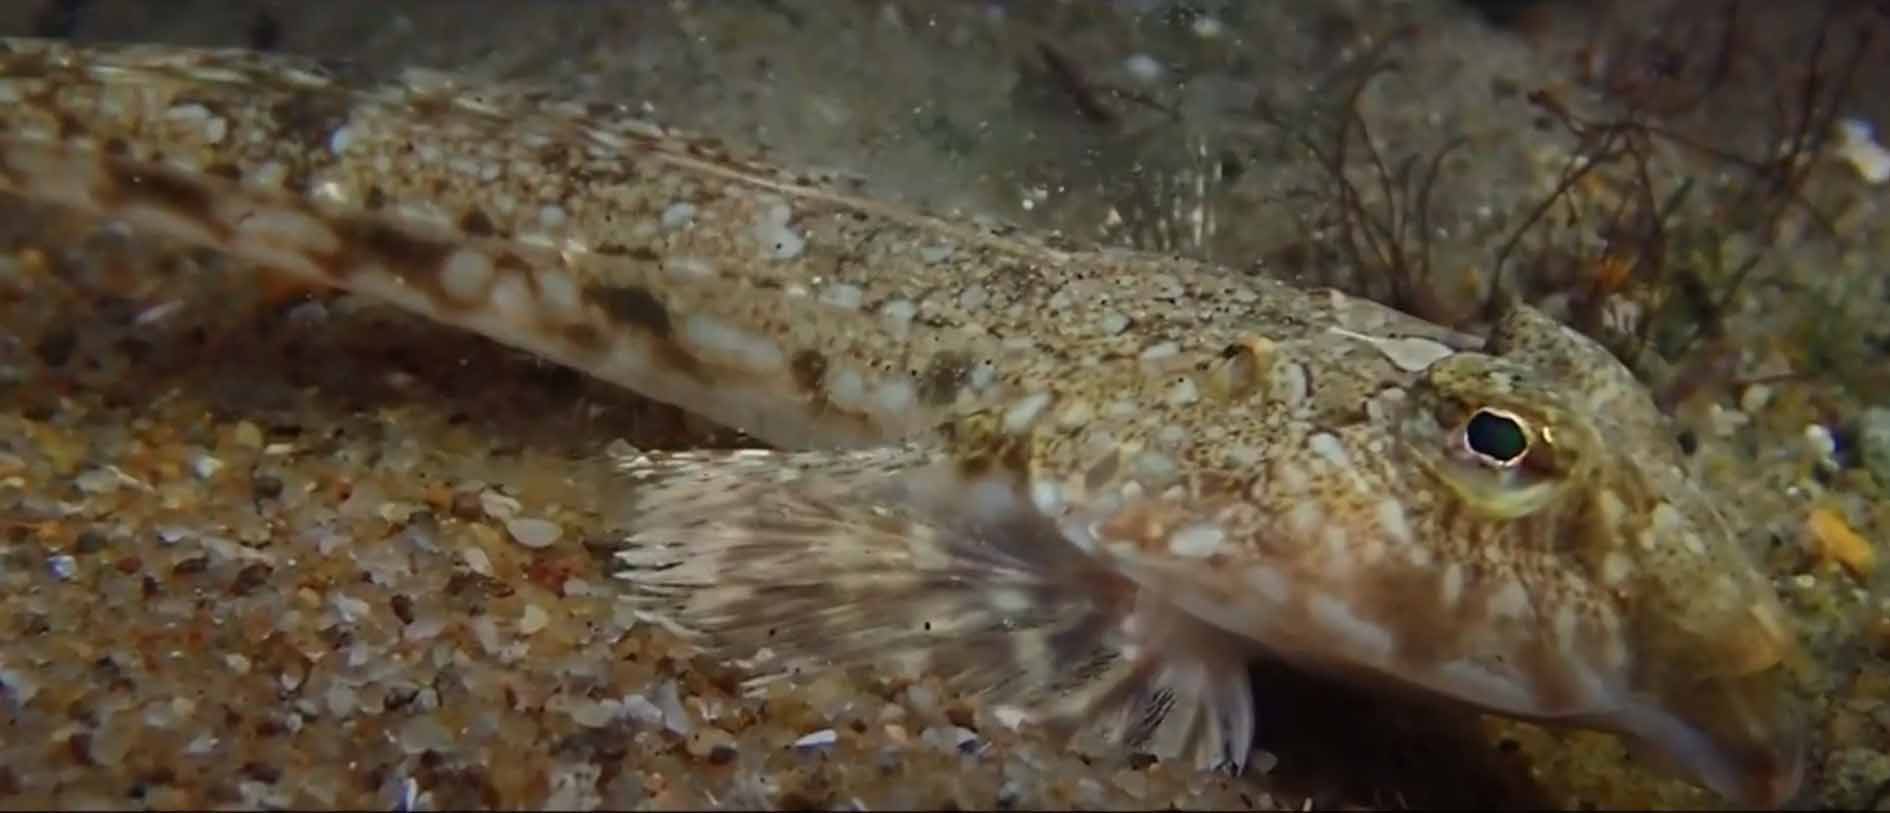 Рыба-лира, морская мышь-лира или большая пескарка (Callionymus lyra).